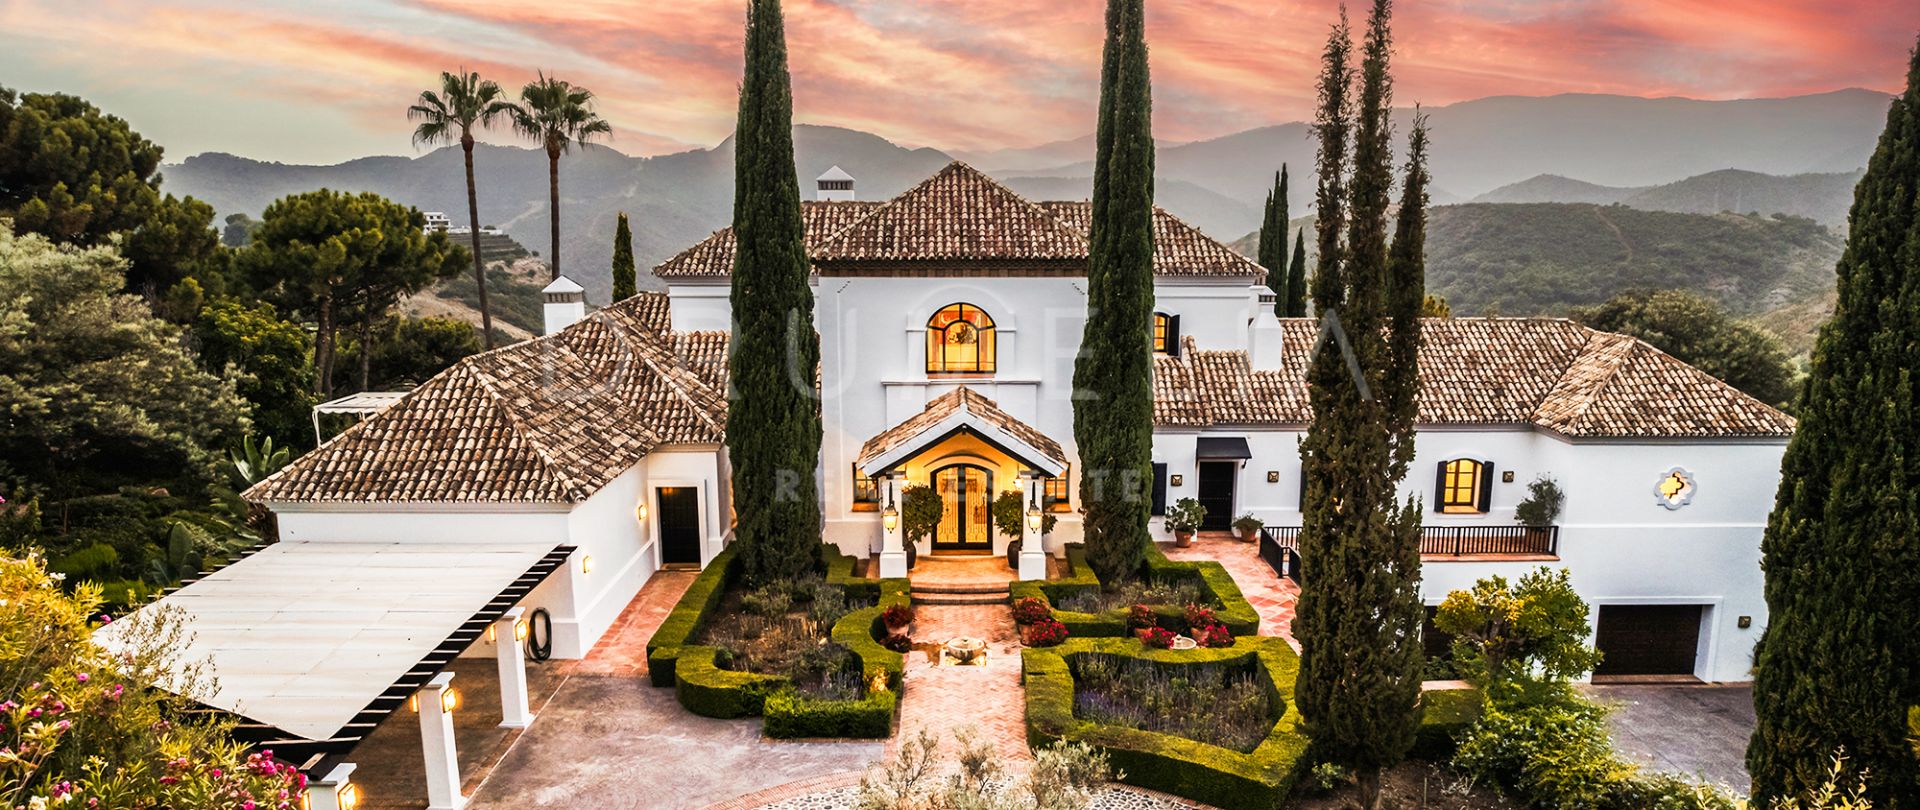 Casa Terregles - Manoir haut de gamme avec charme andalou et vues panoramique à La Zagaleta, Benahavis